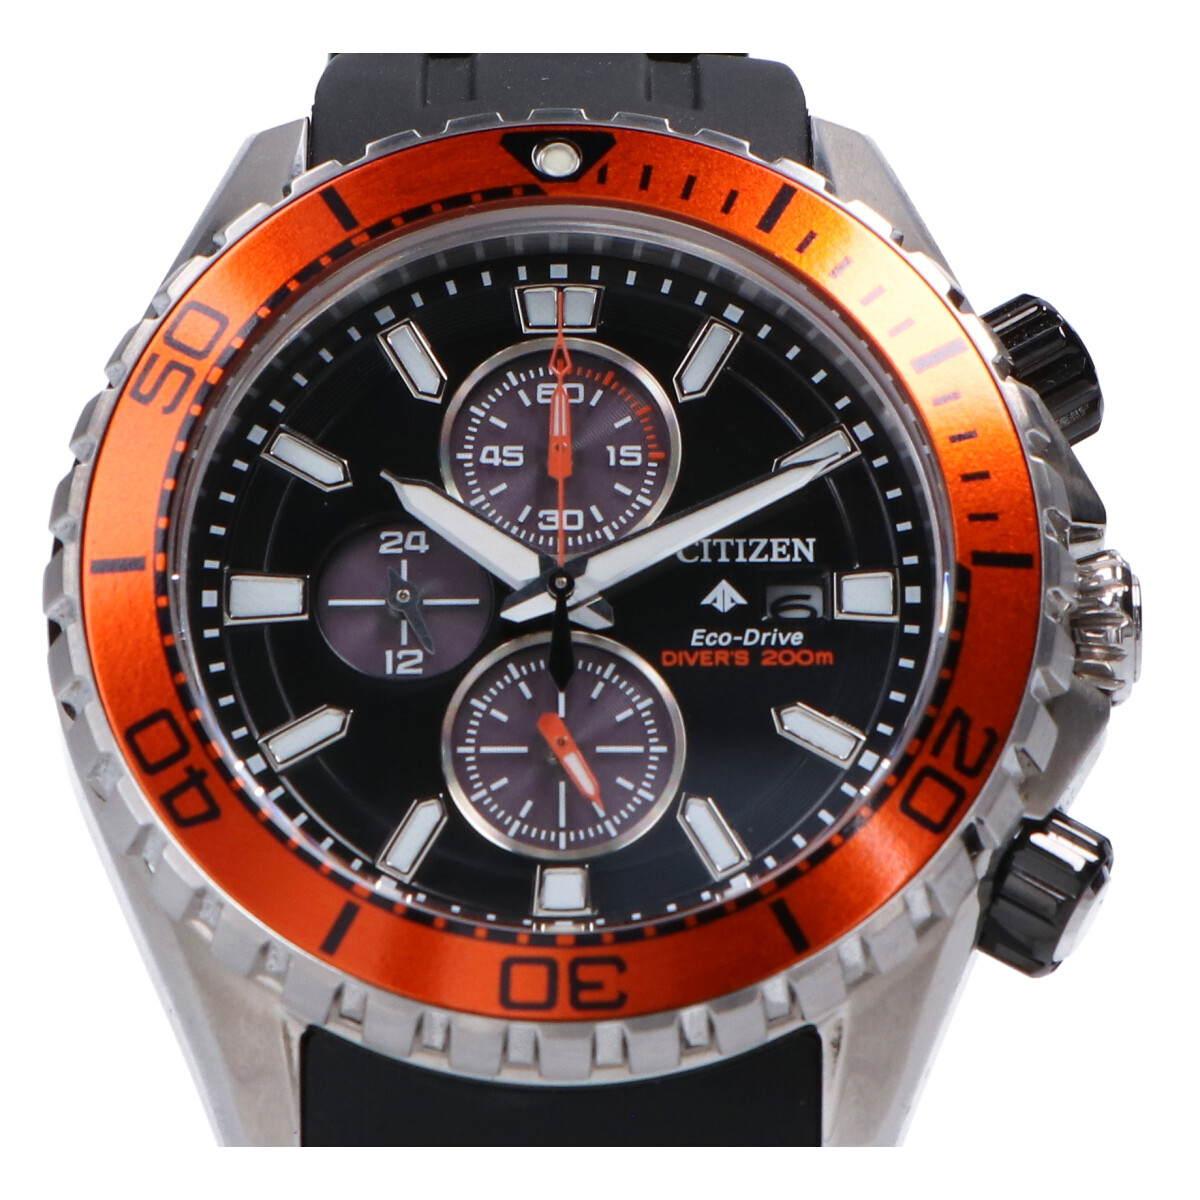 シチズンのプロマスターマリーン CA0718-21E Cal.B612  クロノグラフ 腕時計の買取実績です。